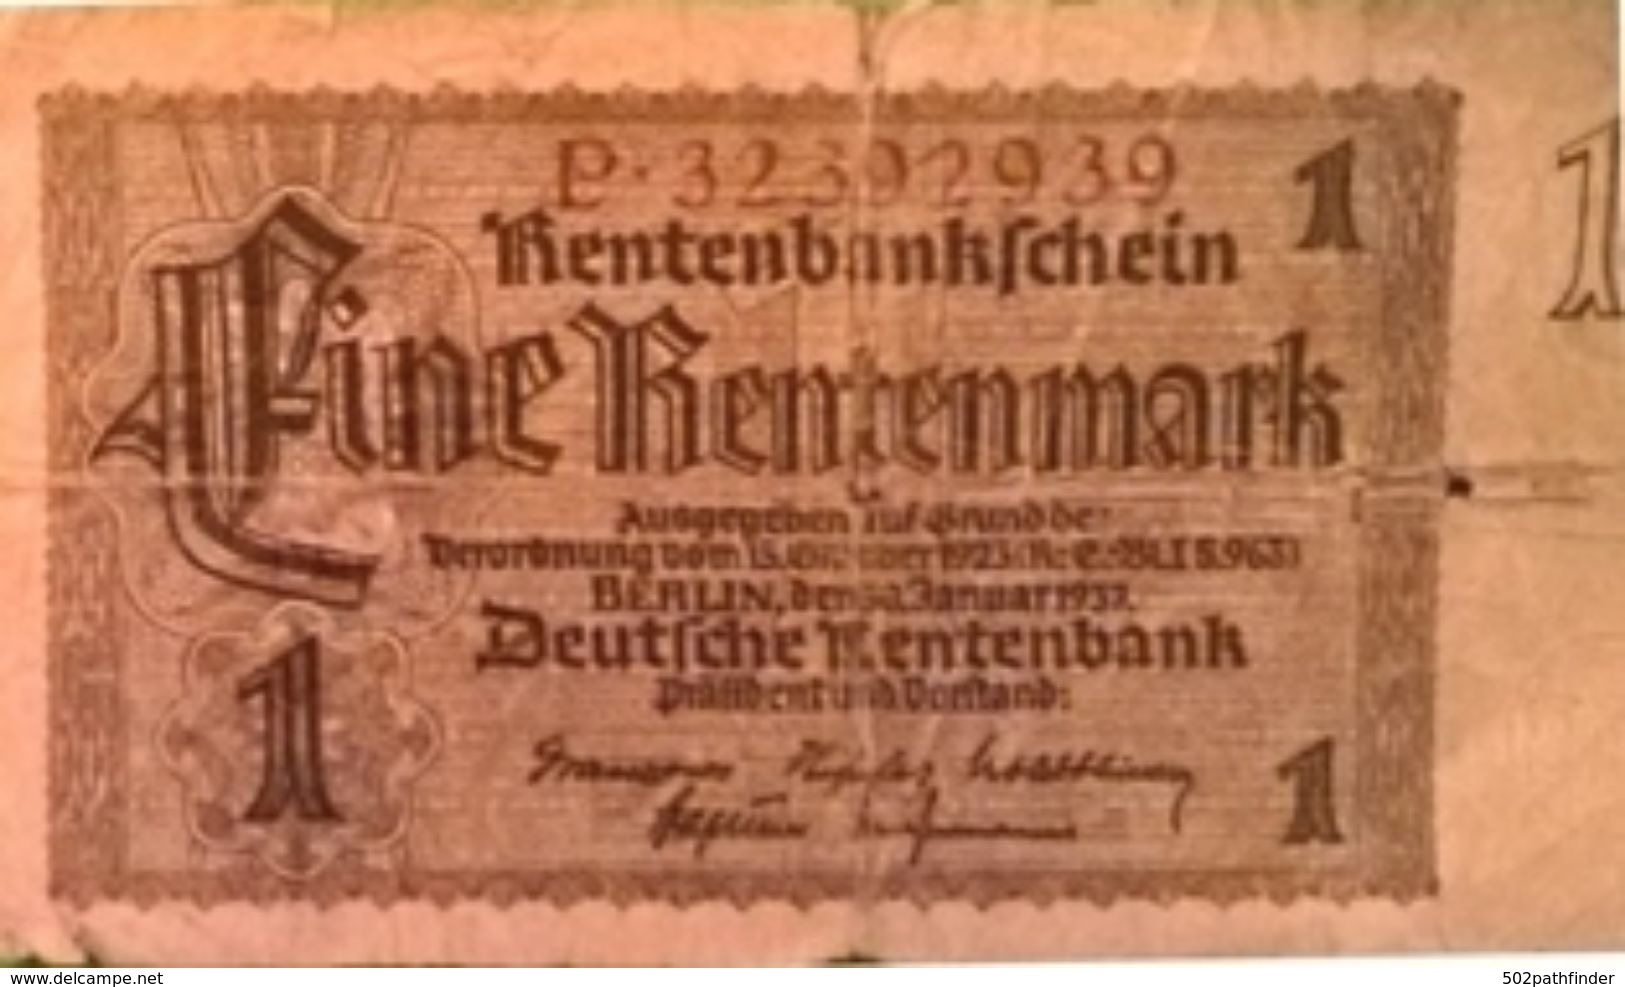 1 Eine RENTENMARK RentenMarkSchein P.32392939 Berlin 30/1/1937 - Verordnung 15/10/1923 Deutsche Rentenbank - 1 Rentenmark